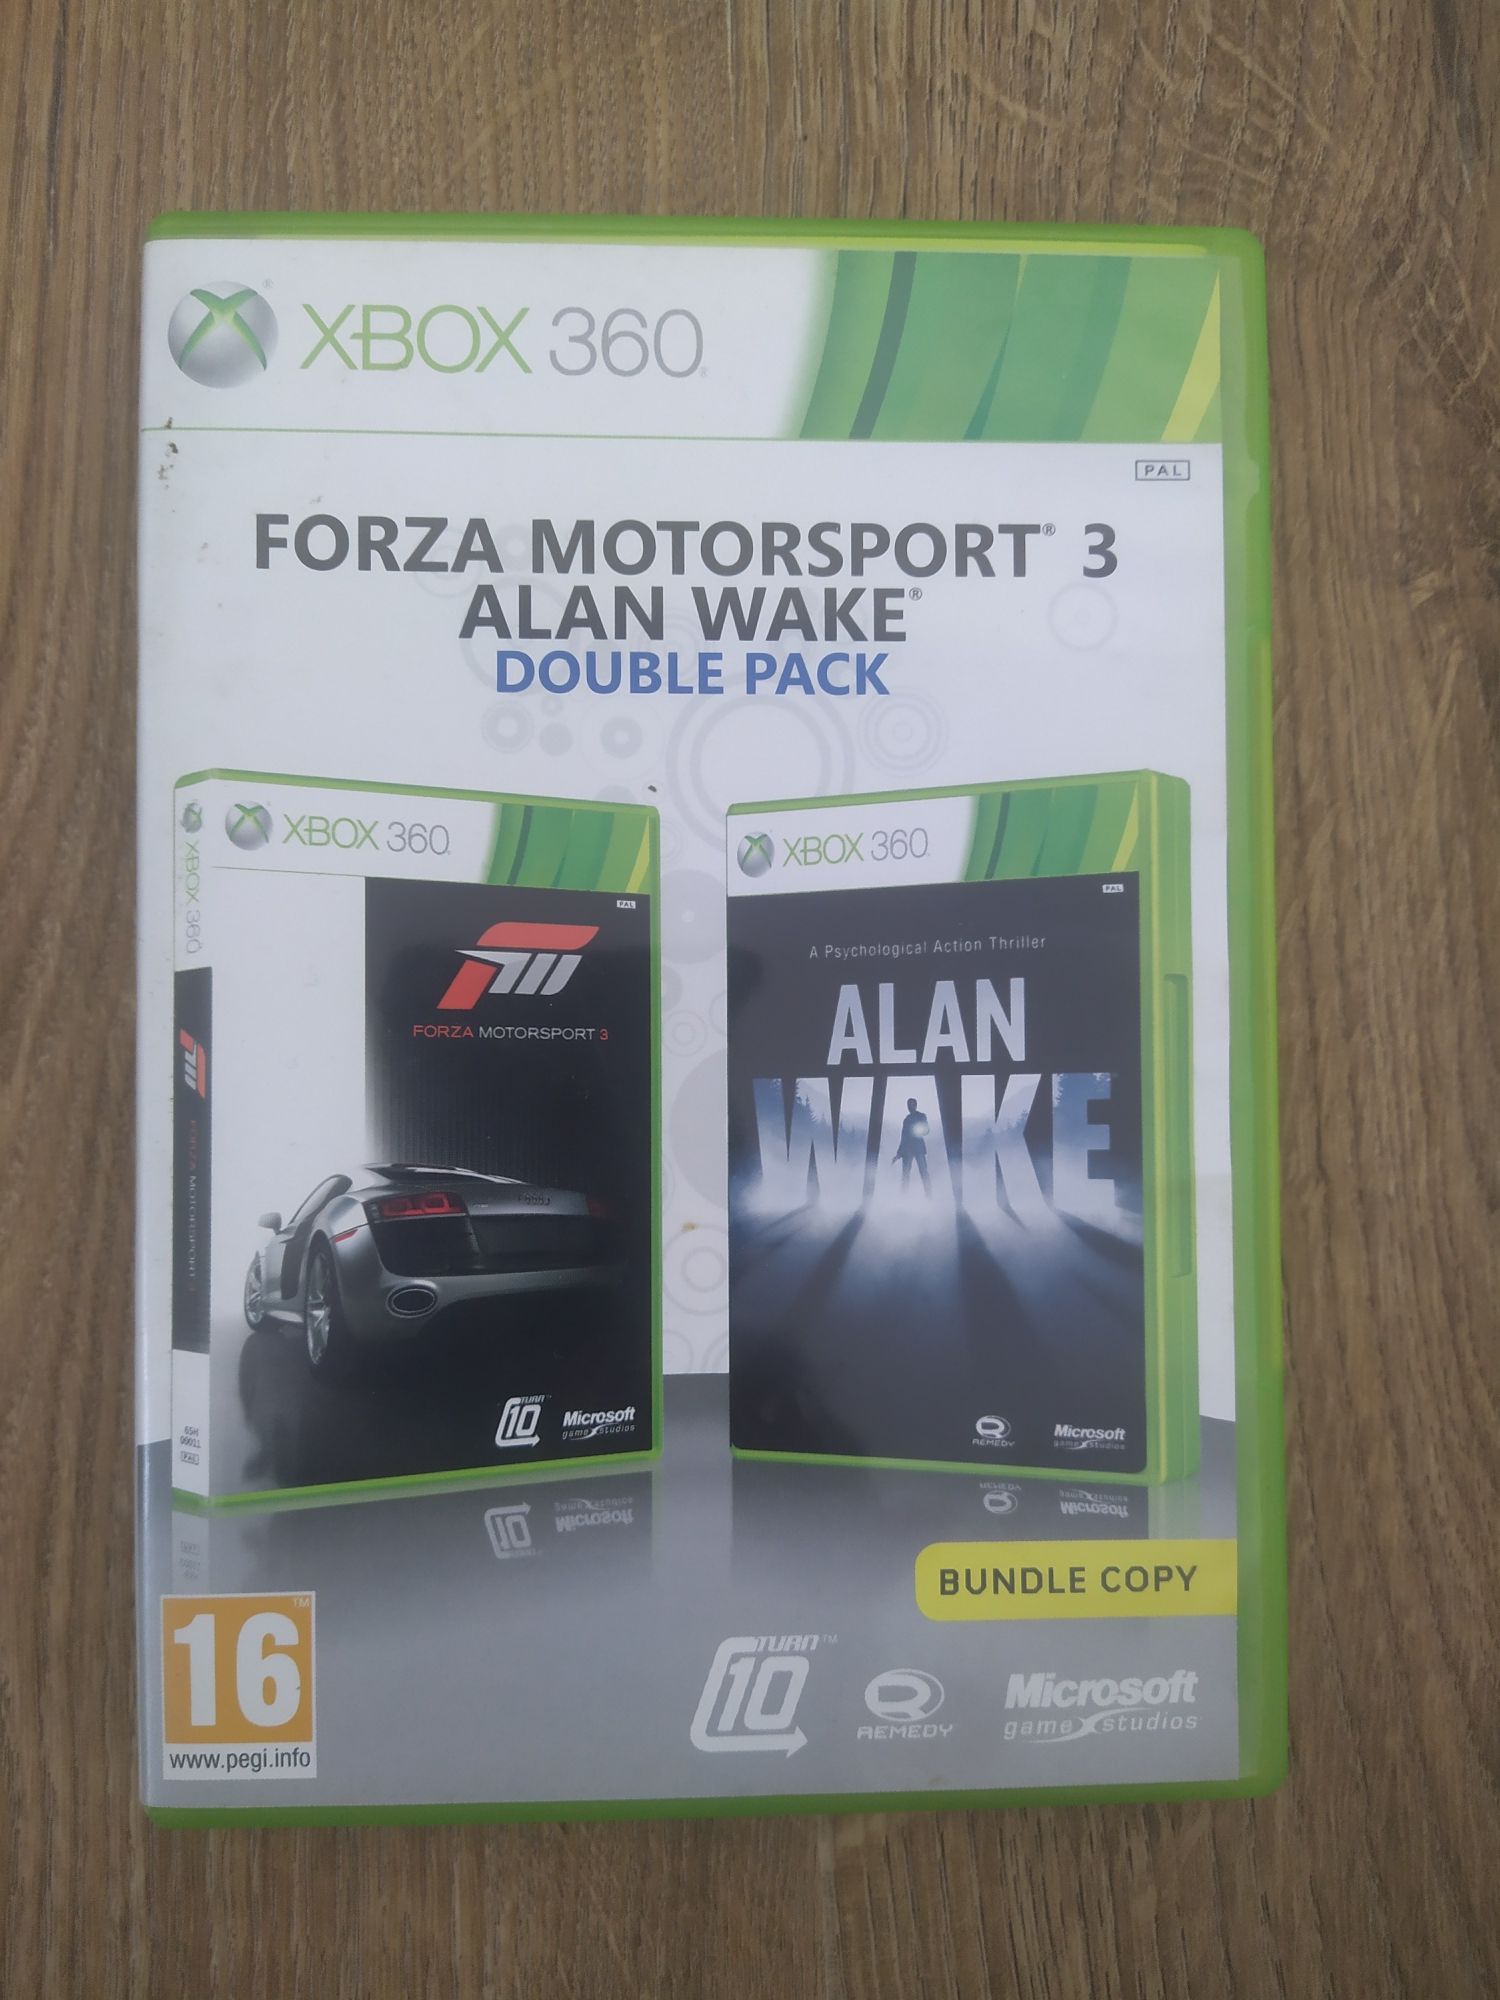 Alan Wale /Forza Motorsport Xbox 360